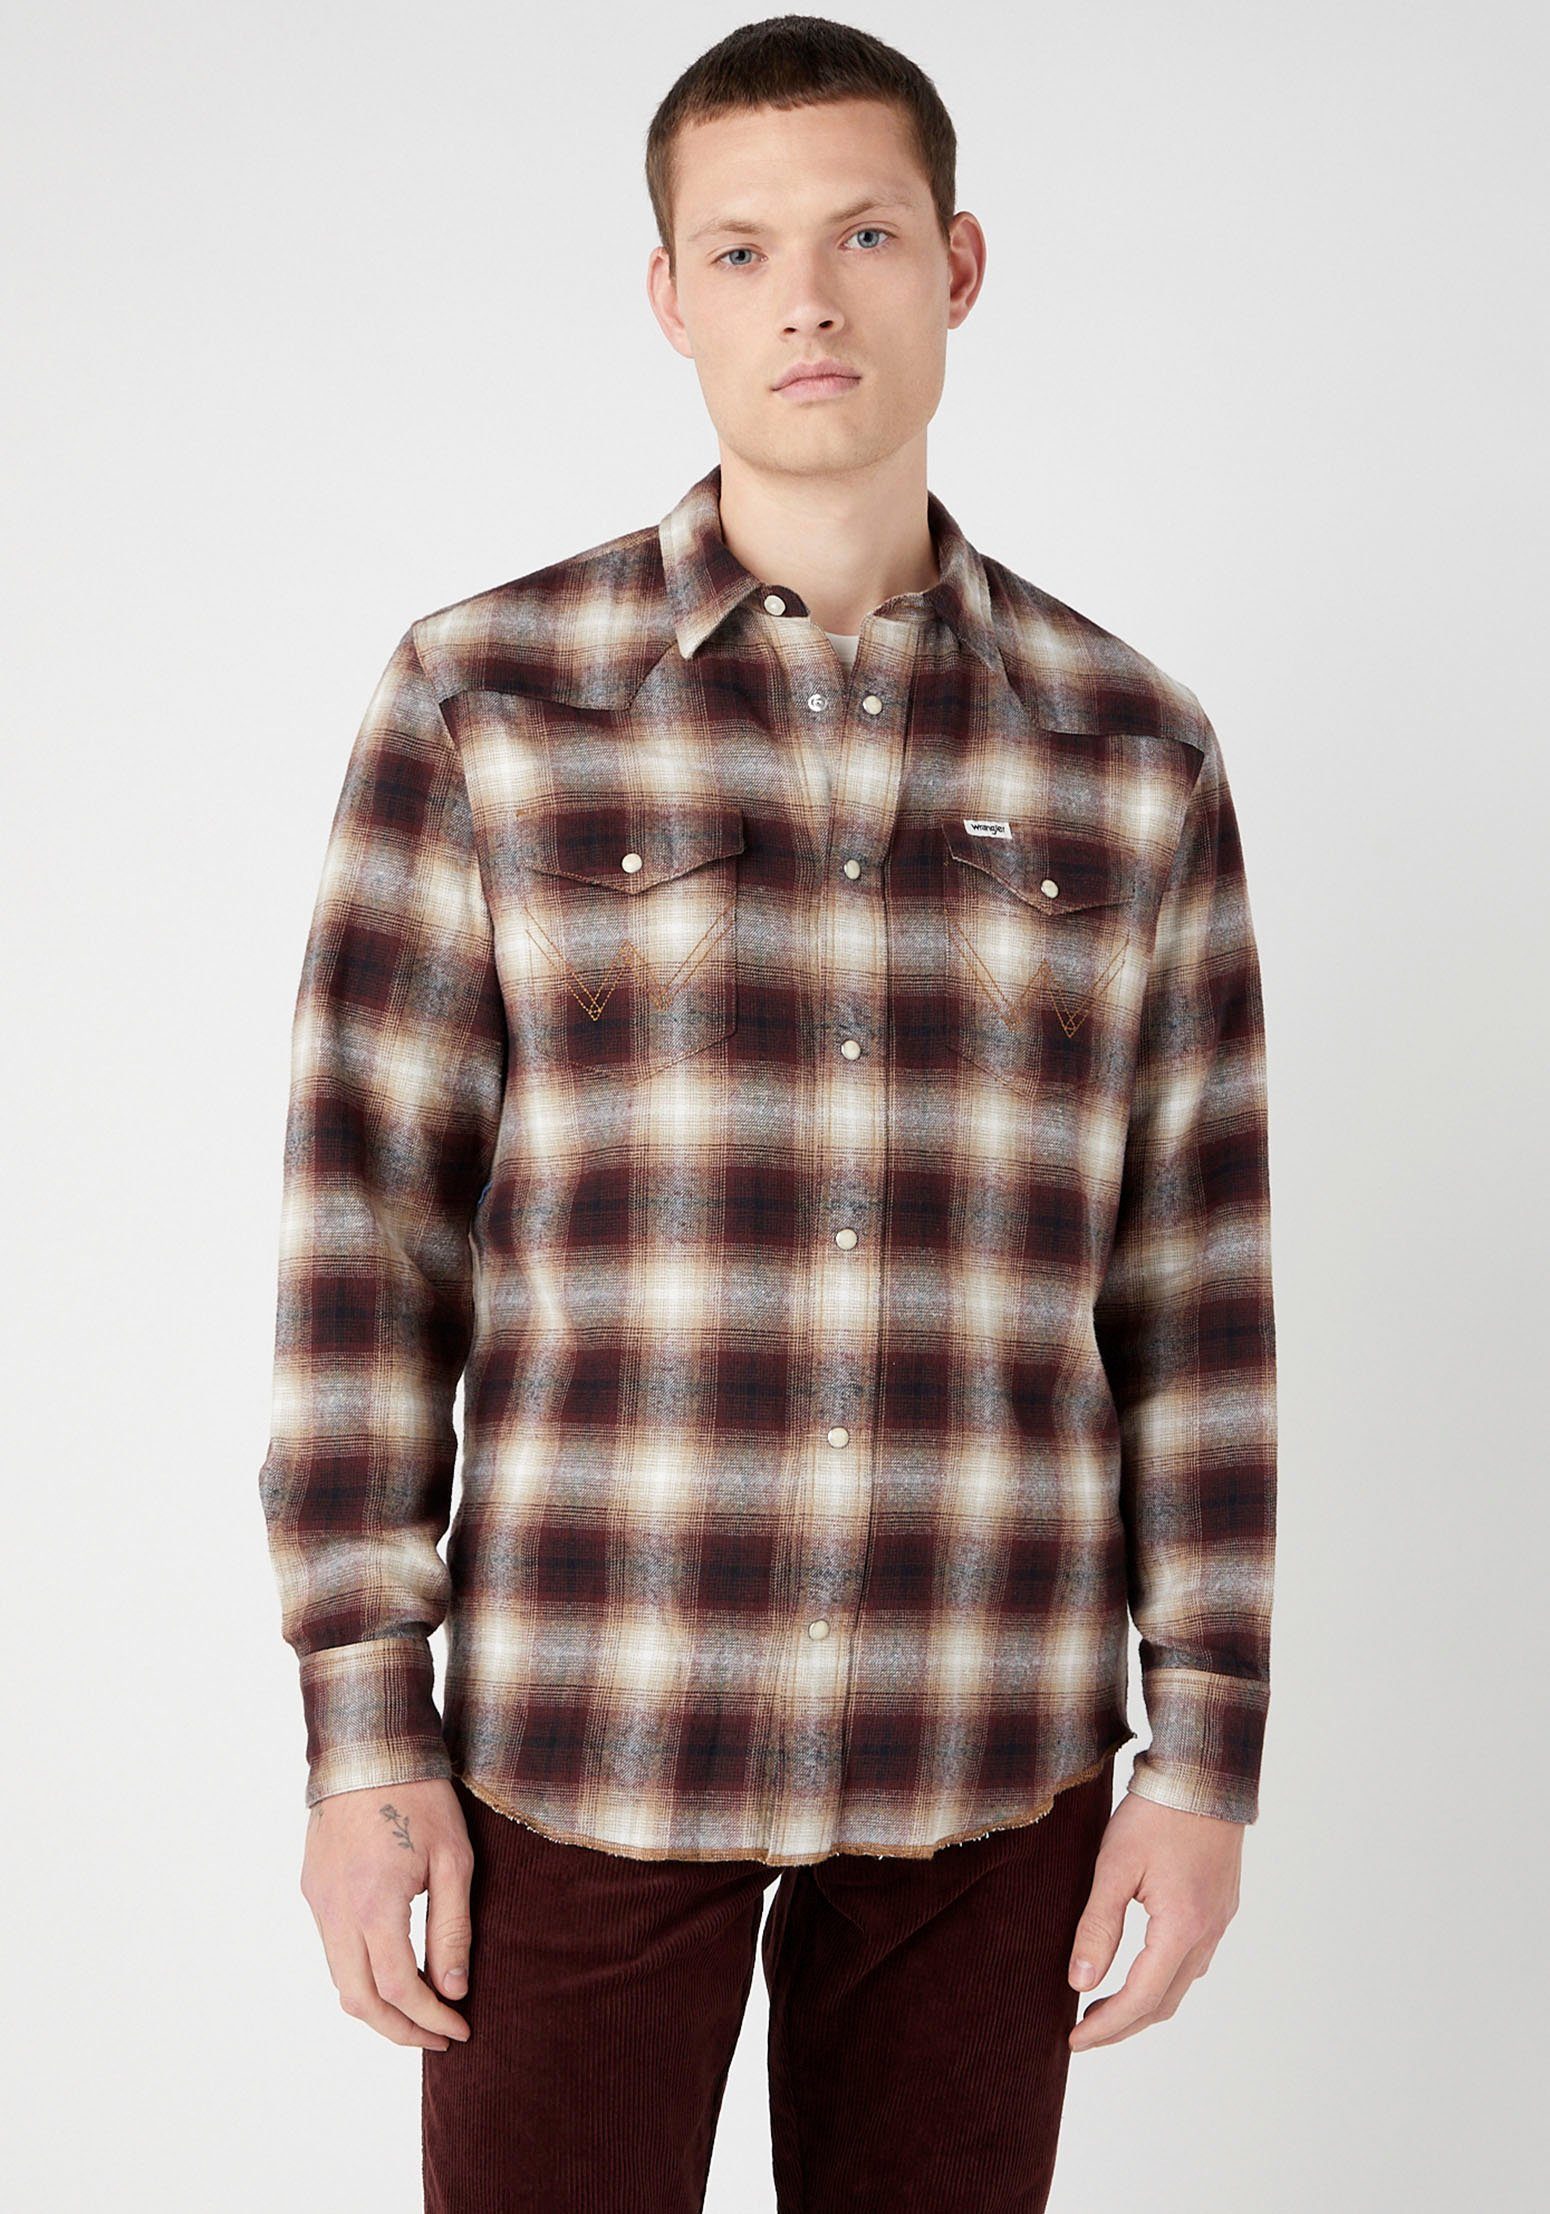 [Hohe Qualität, niedriger Preis] dahlia Shirt Western Wrangler Karohemd